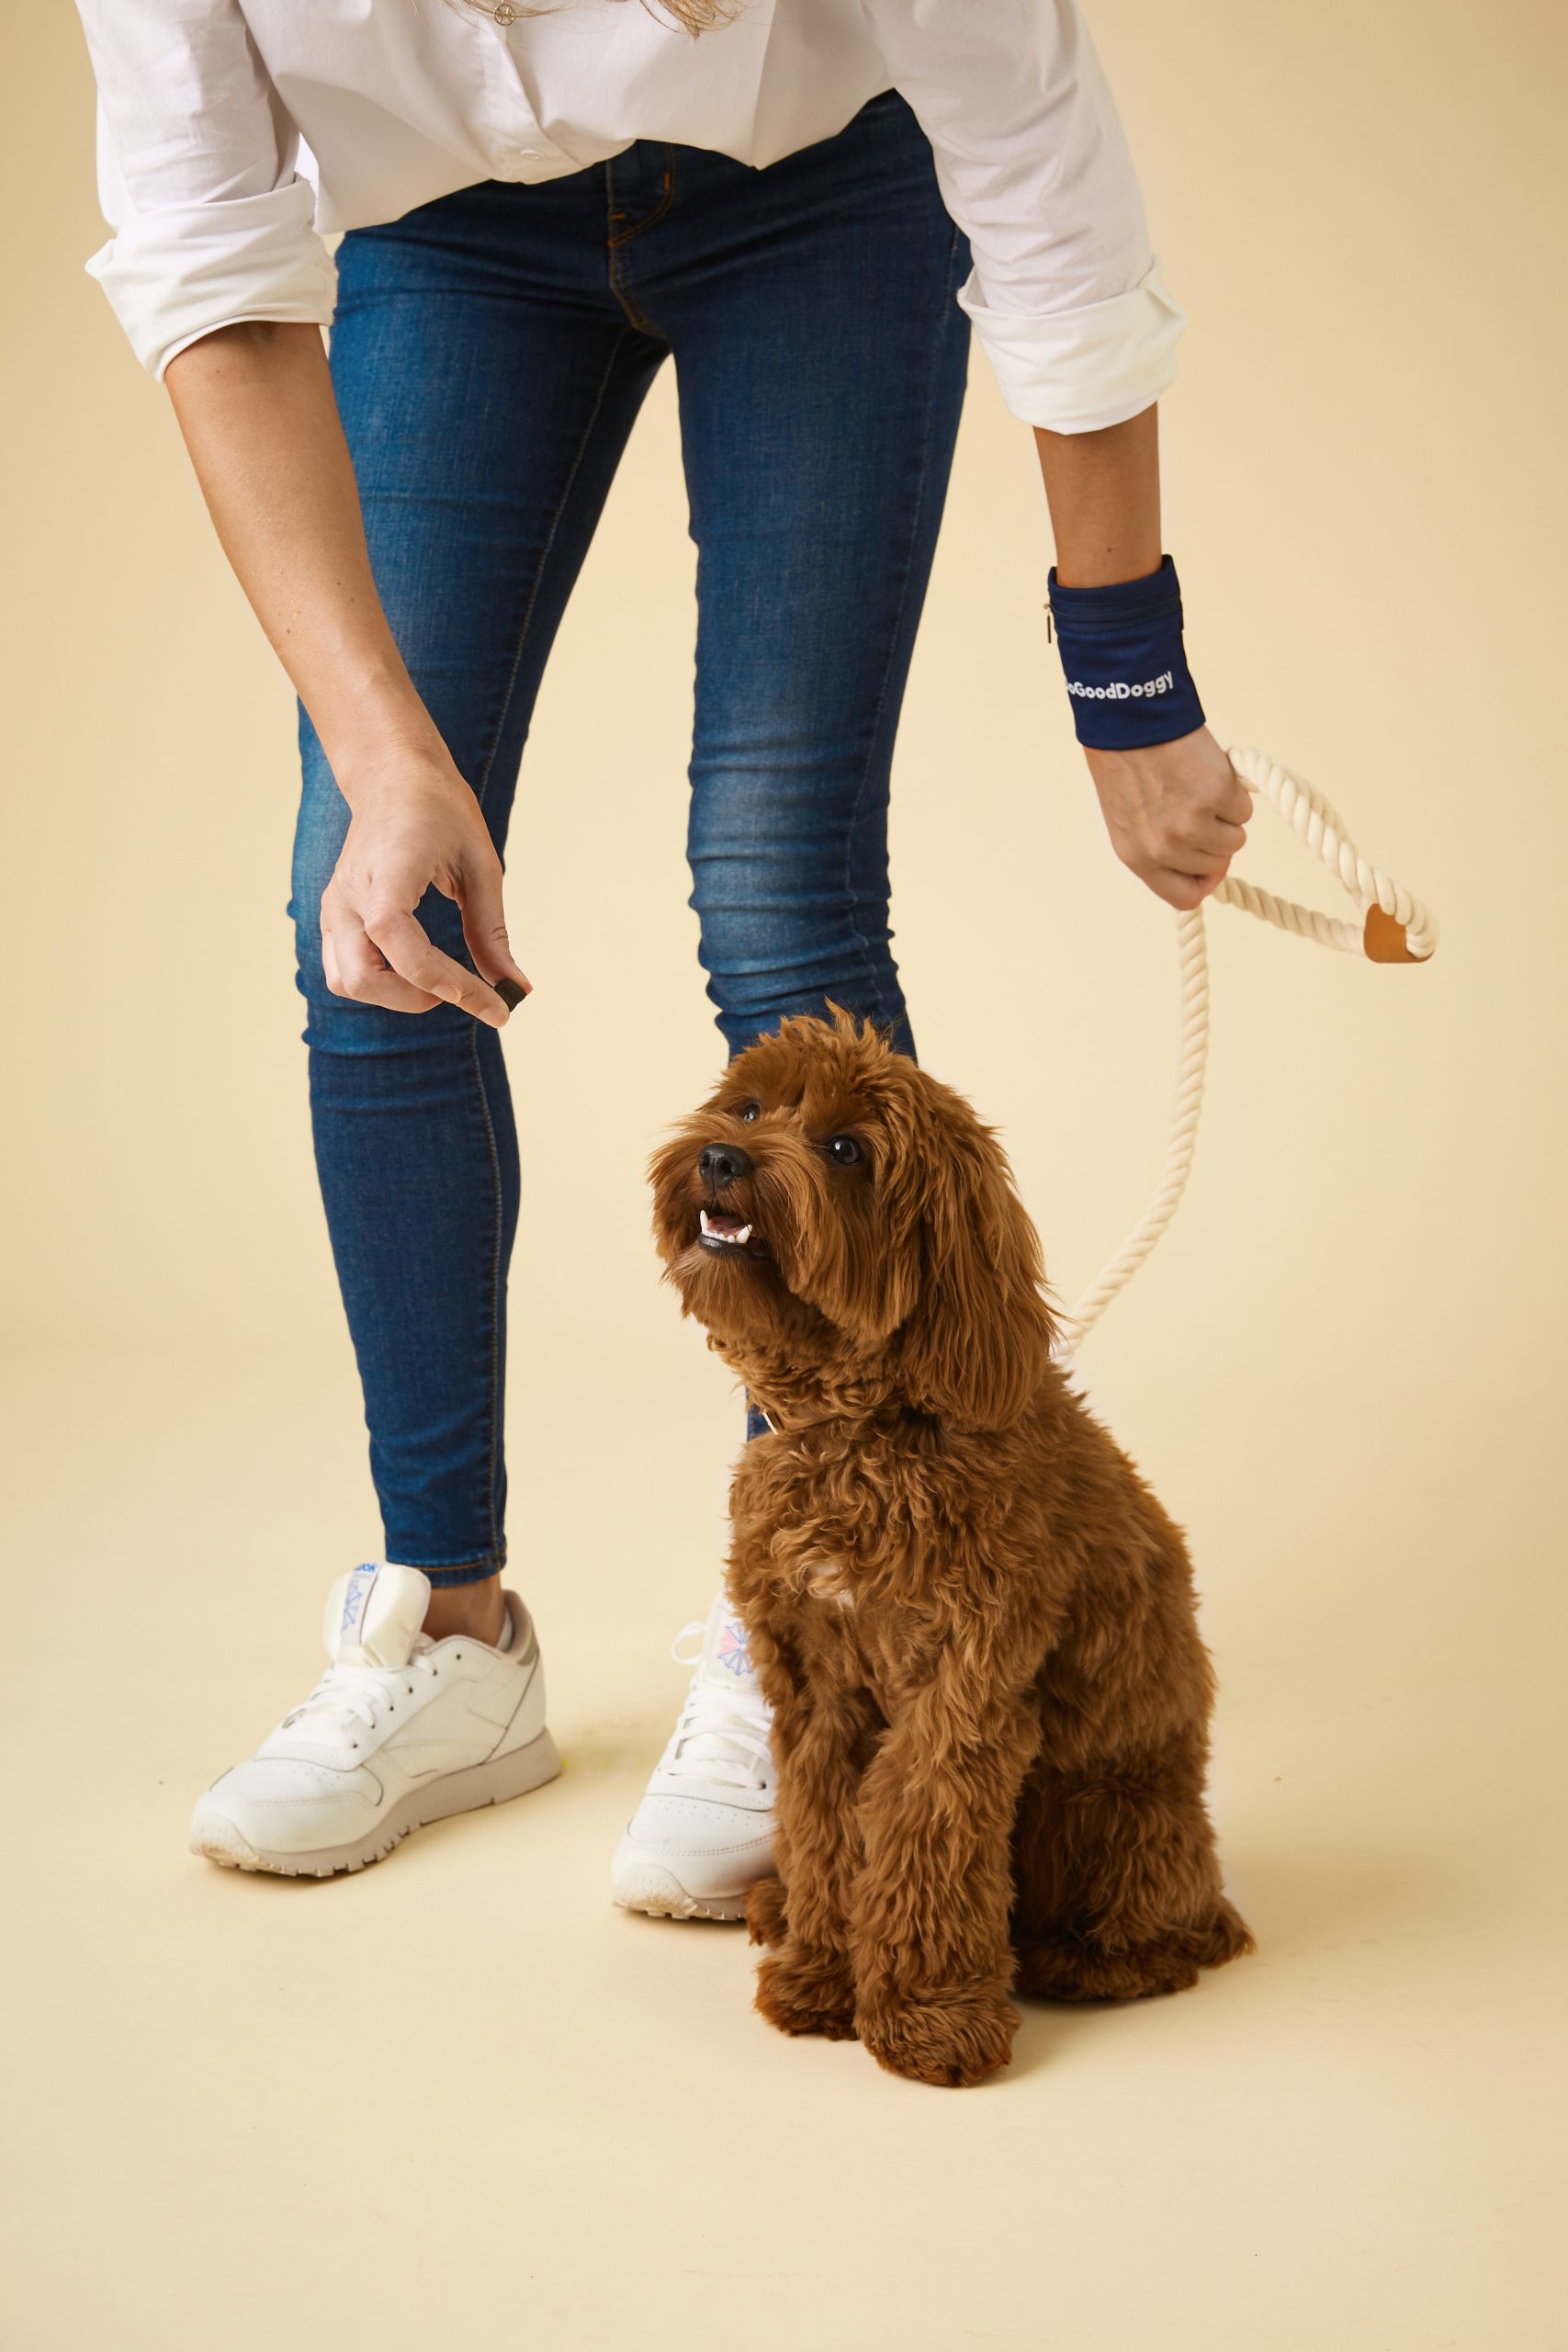 New Puppy – Essentials To Know